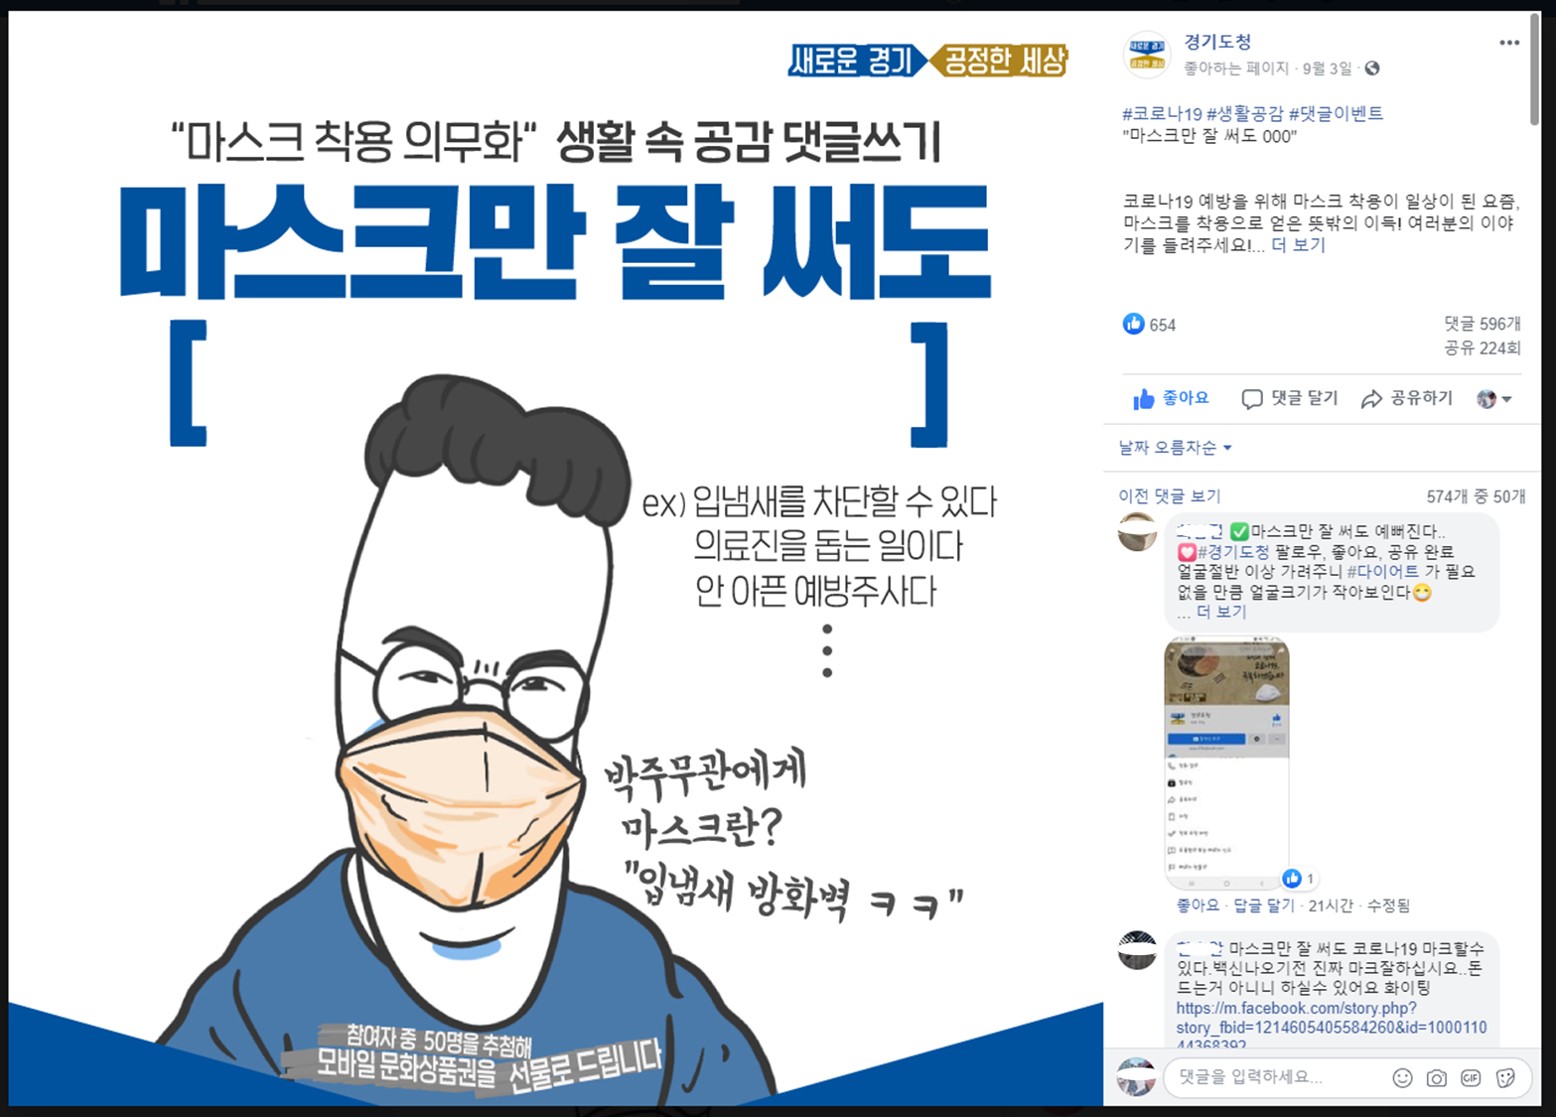 ‘마스크만 잘 써도, ○○○ 캠페인’ 경기도 SNS 이벤트, 재치 댓글 